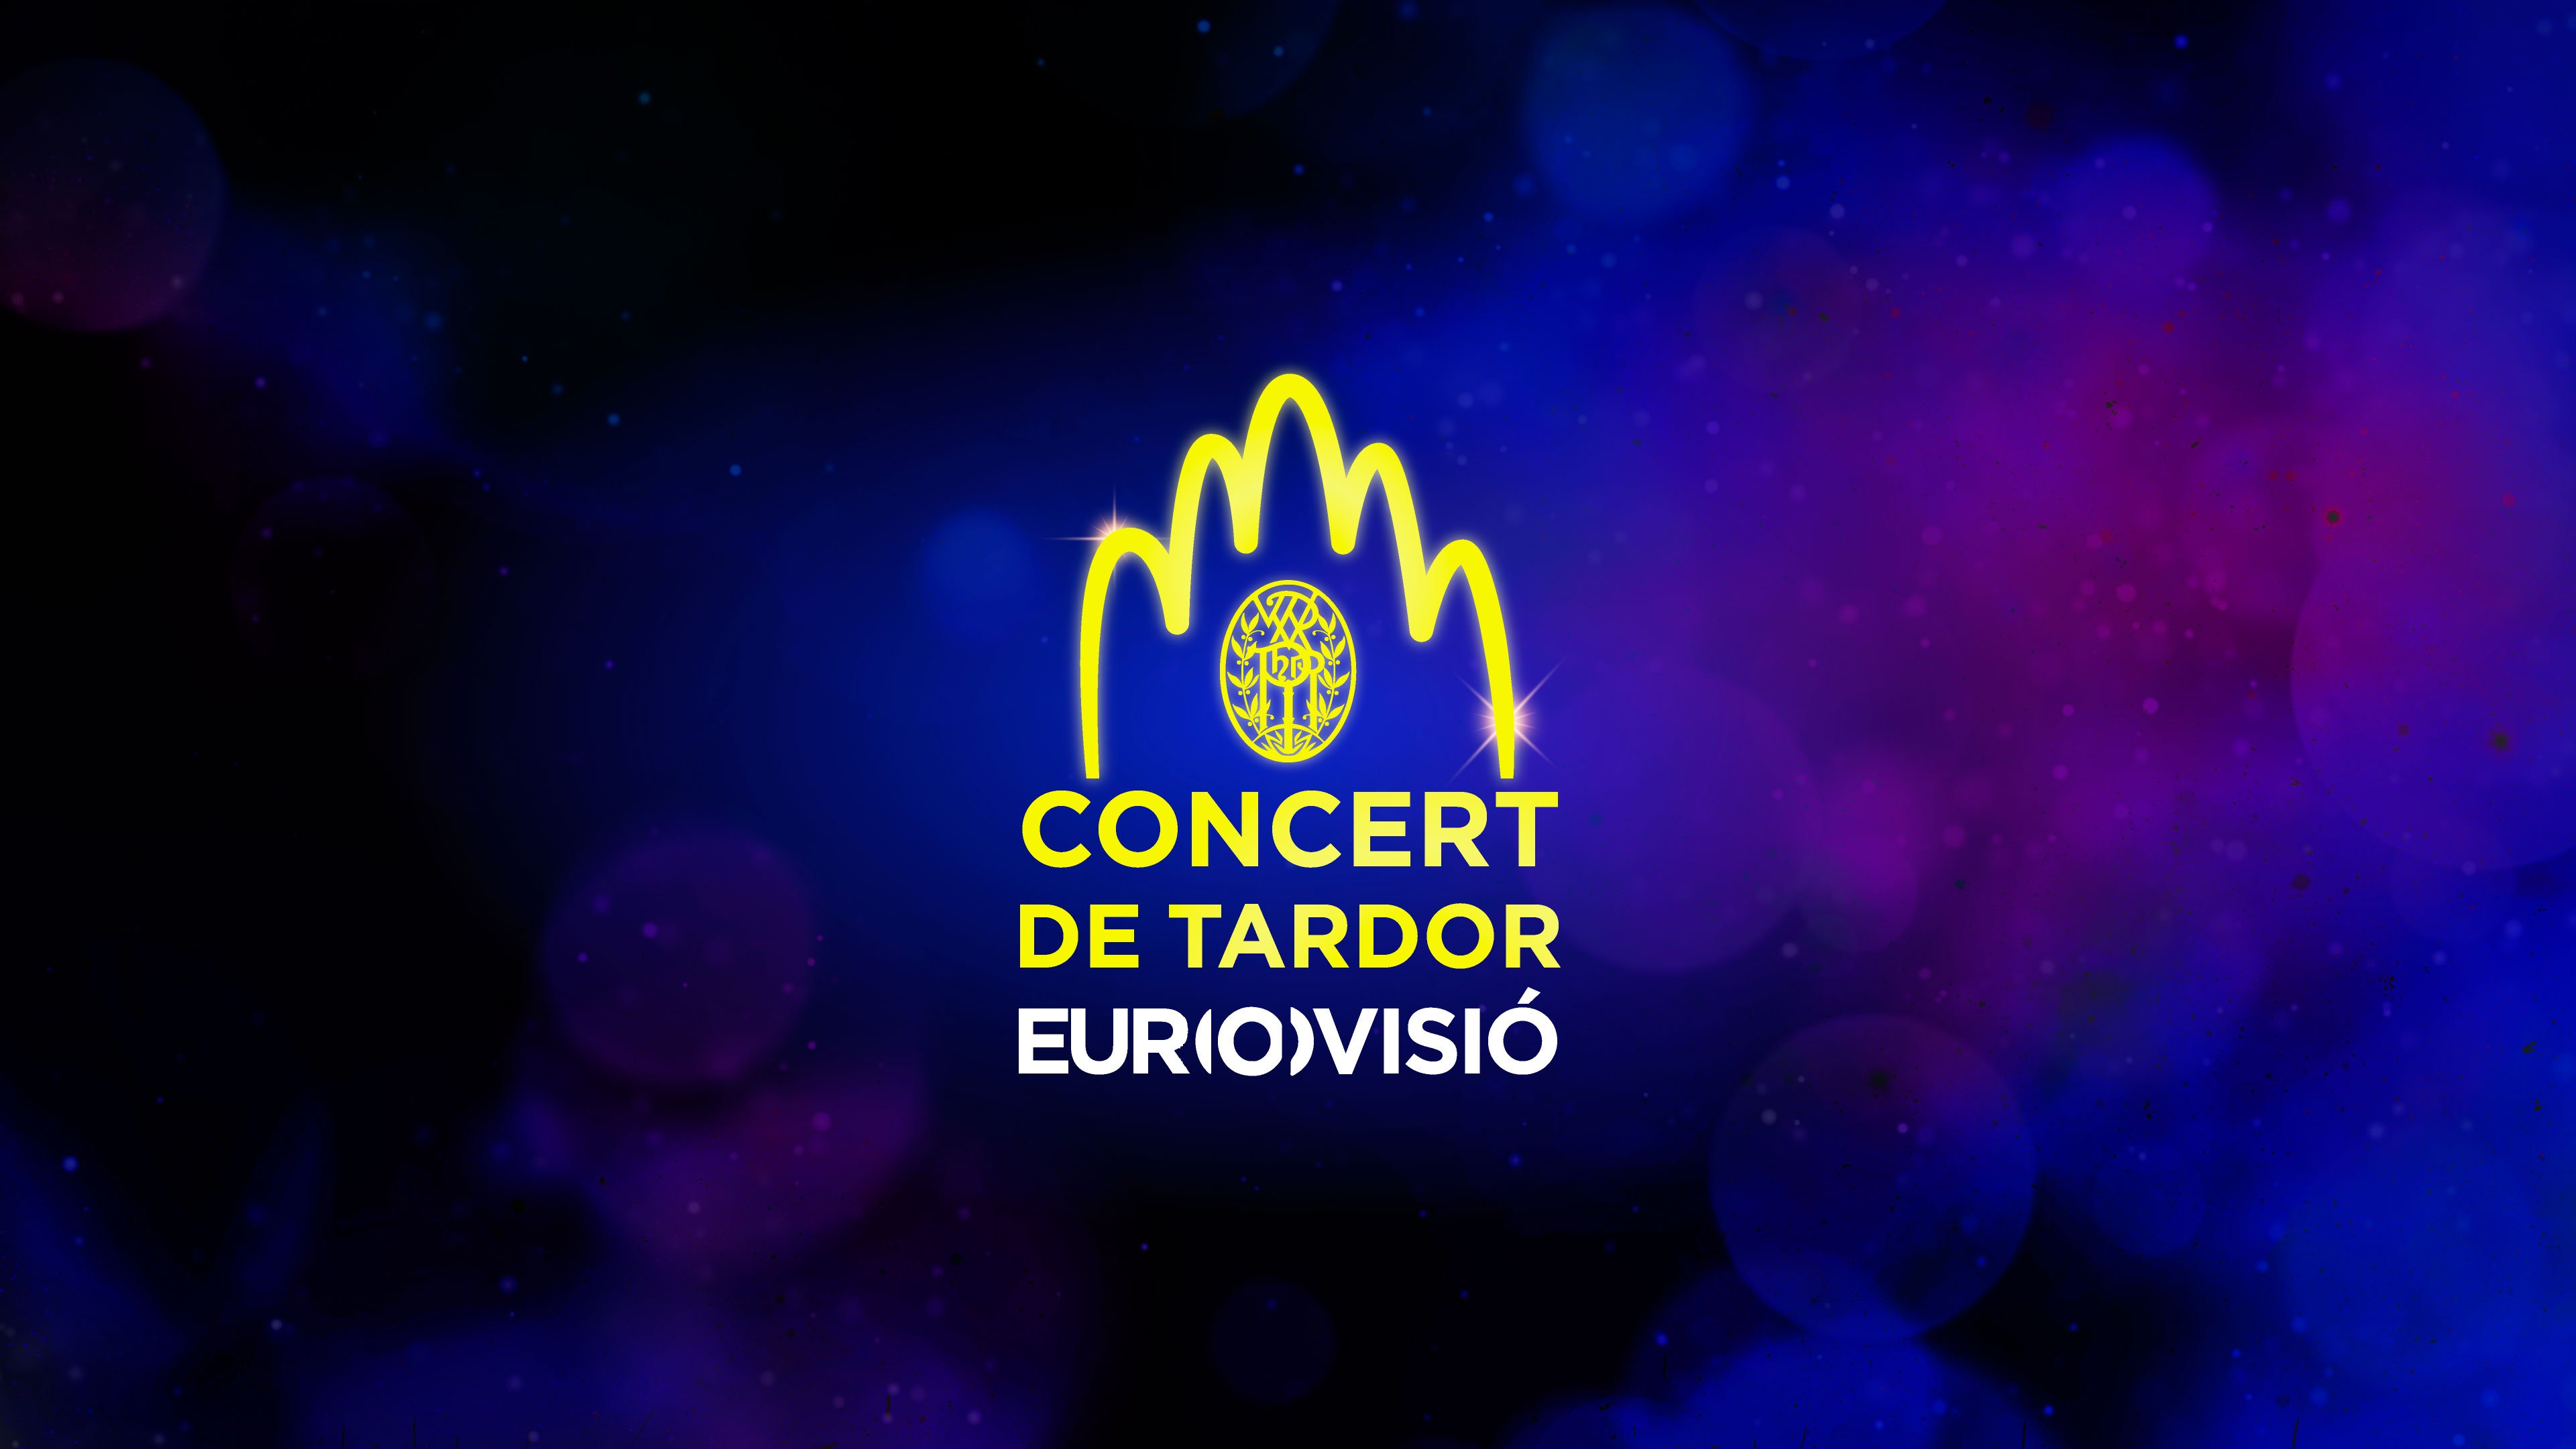 La UER celebrará el 13 de septiembre el Concierto de Otoño de Eurovisión en la Sagrada Familia